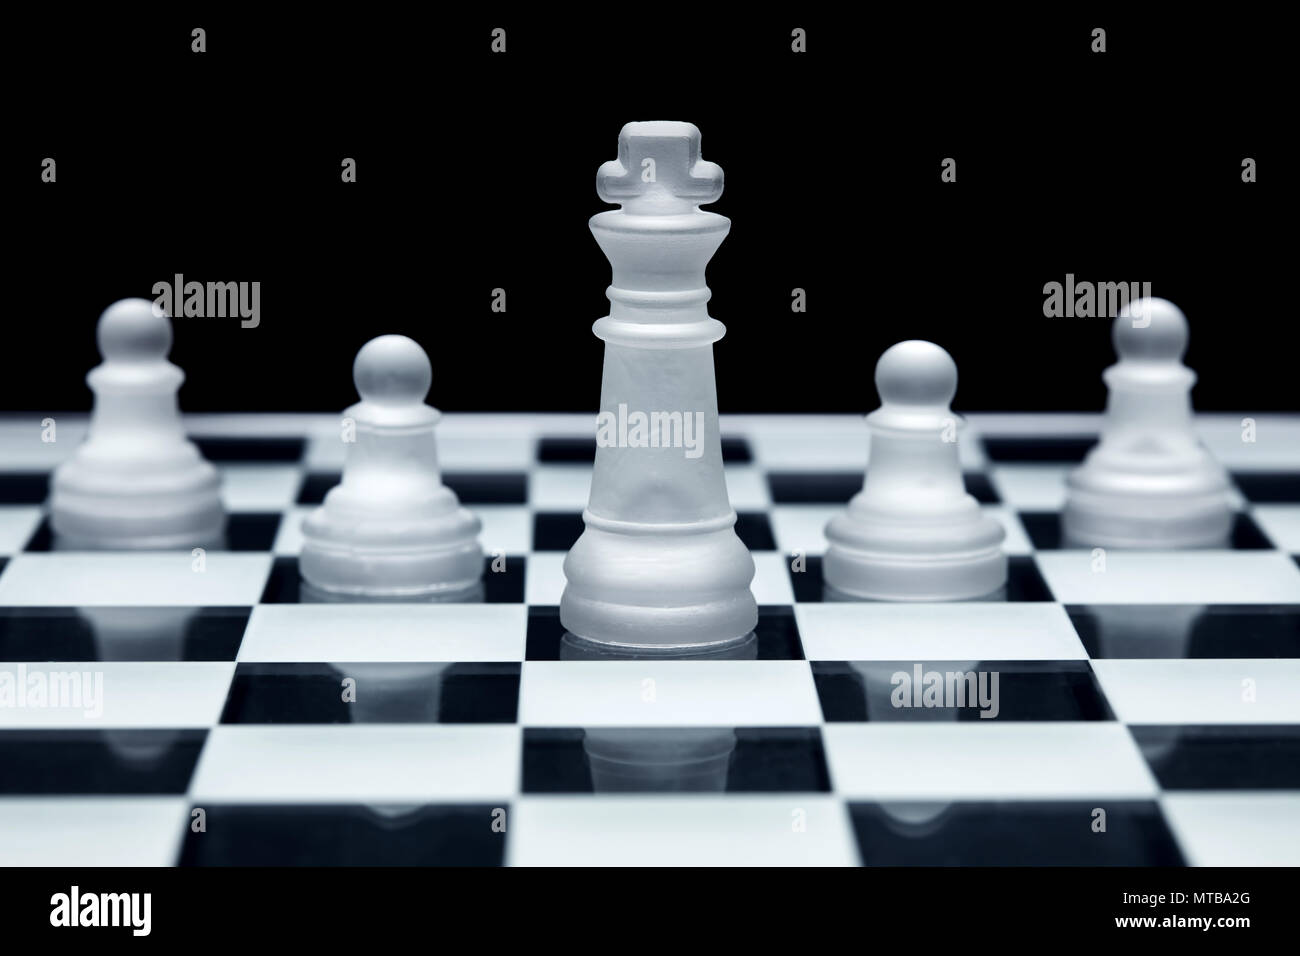 Schach spiel strategie. König und drei Bauern aufgereiht. Konzept der Teamarbeit, Führung und Solidarität. Stockfoto